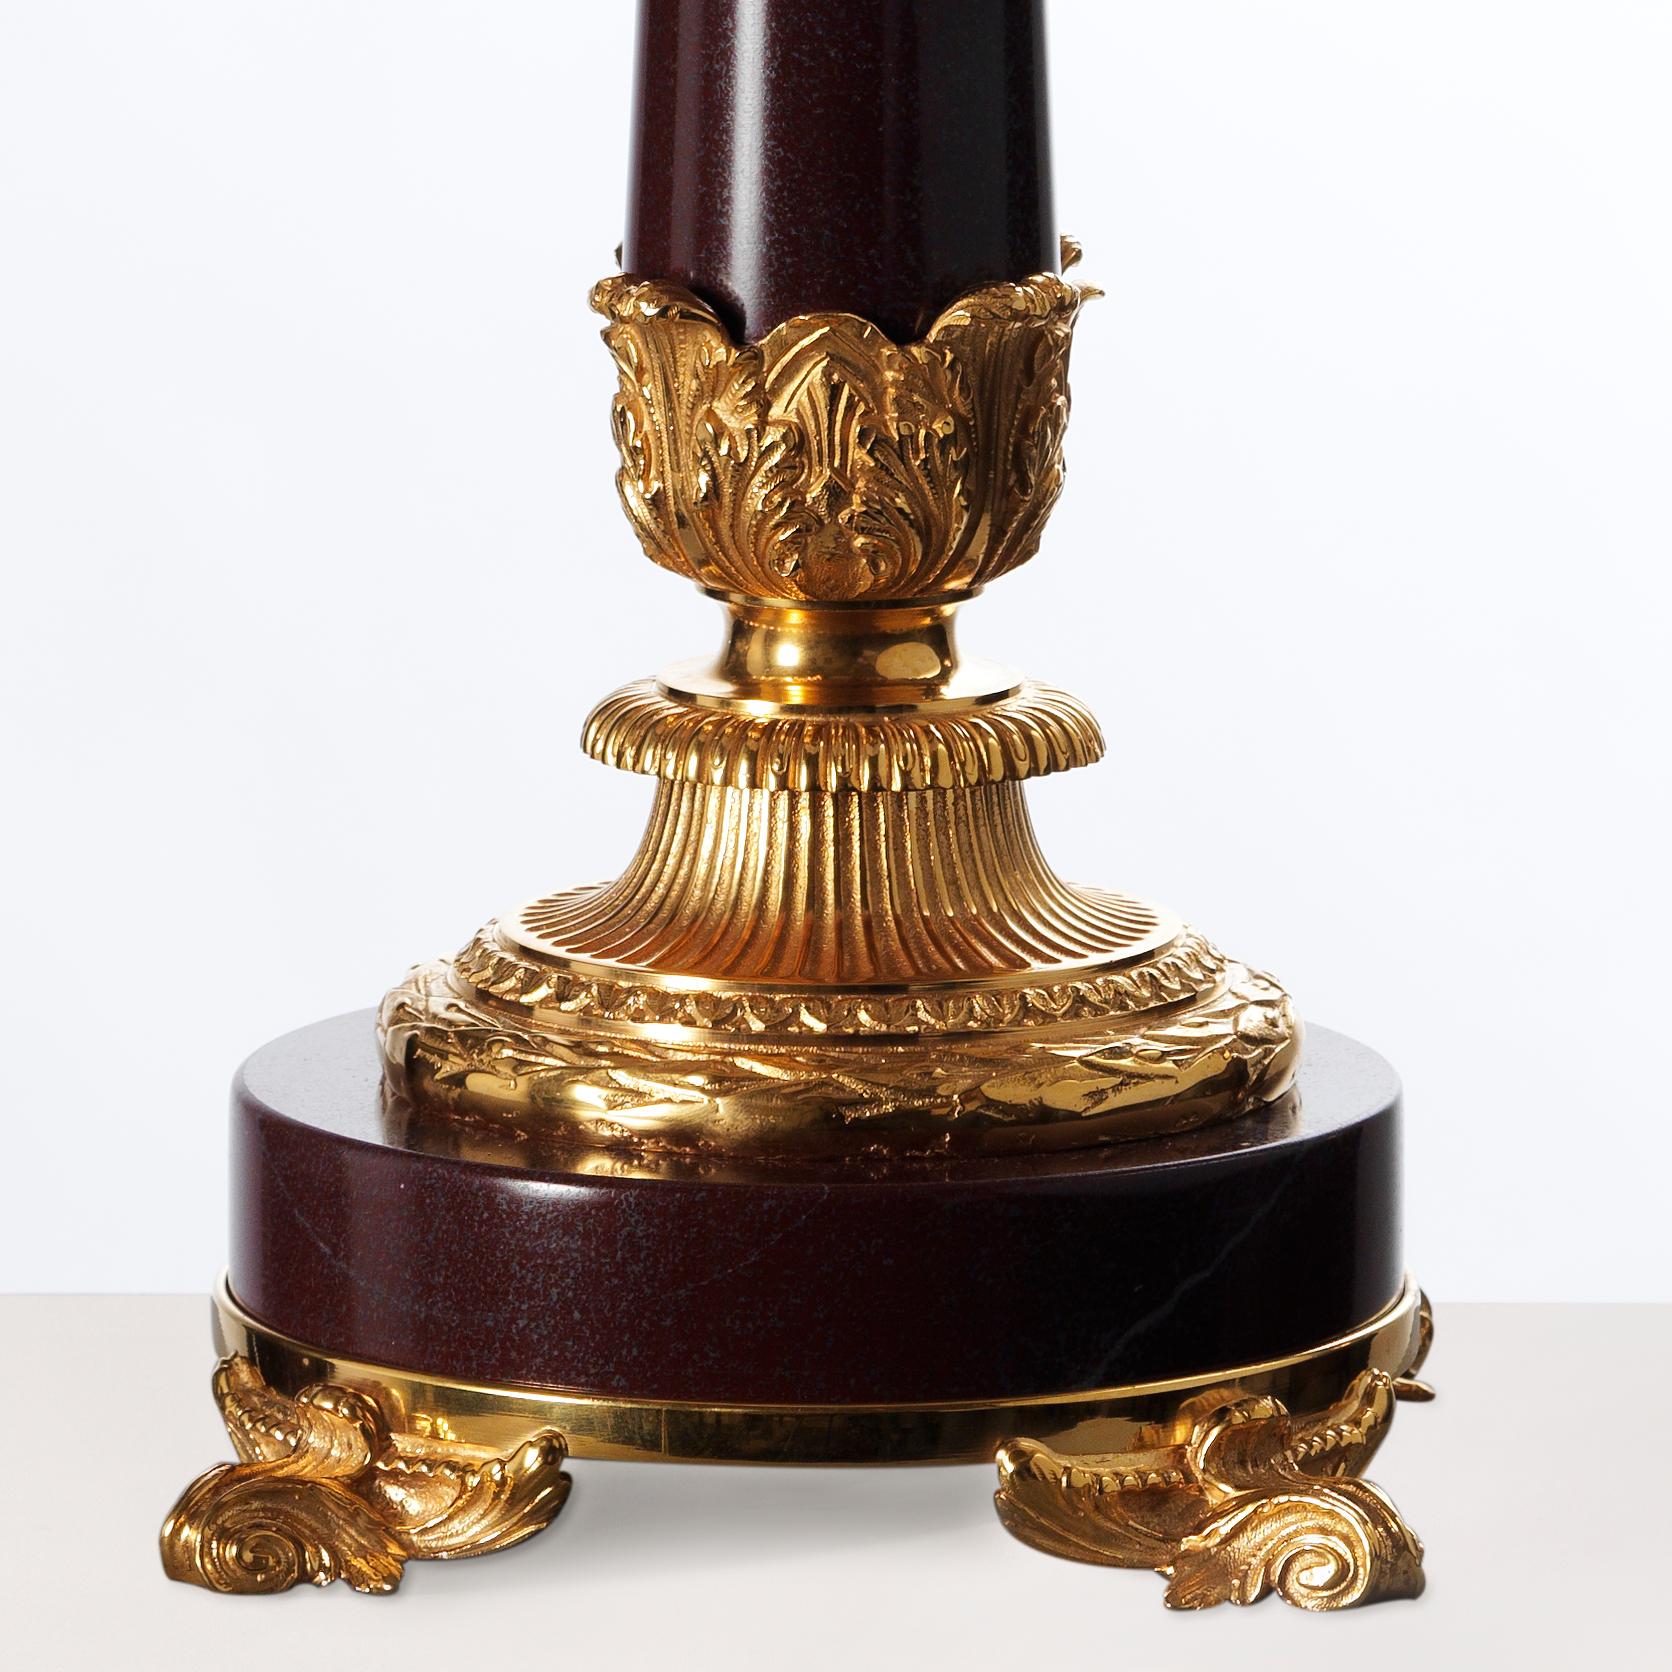 Dieser elegante Kandelaber im Louis XVI-Stil von Gherardo Degli Albizzi zeichnet sich durch hochwertige Verzierungen aus vergoldeter Bronze aus, wie z. B. das vollständig ziselierte Kapitell im korinthischen Stil oder der Sockel mit einem